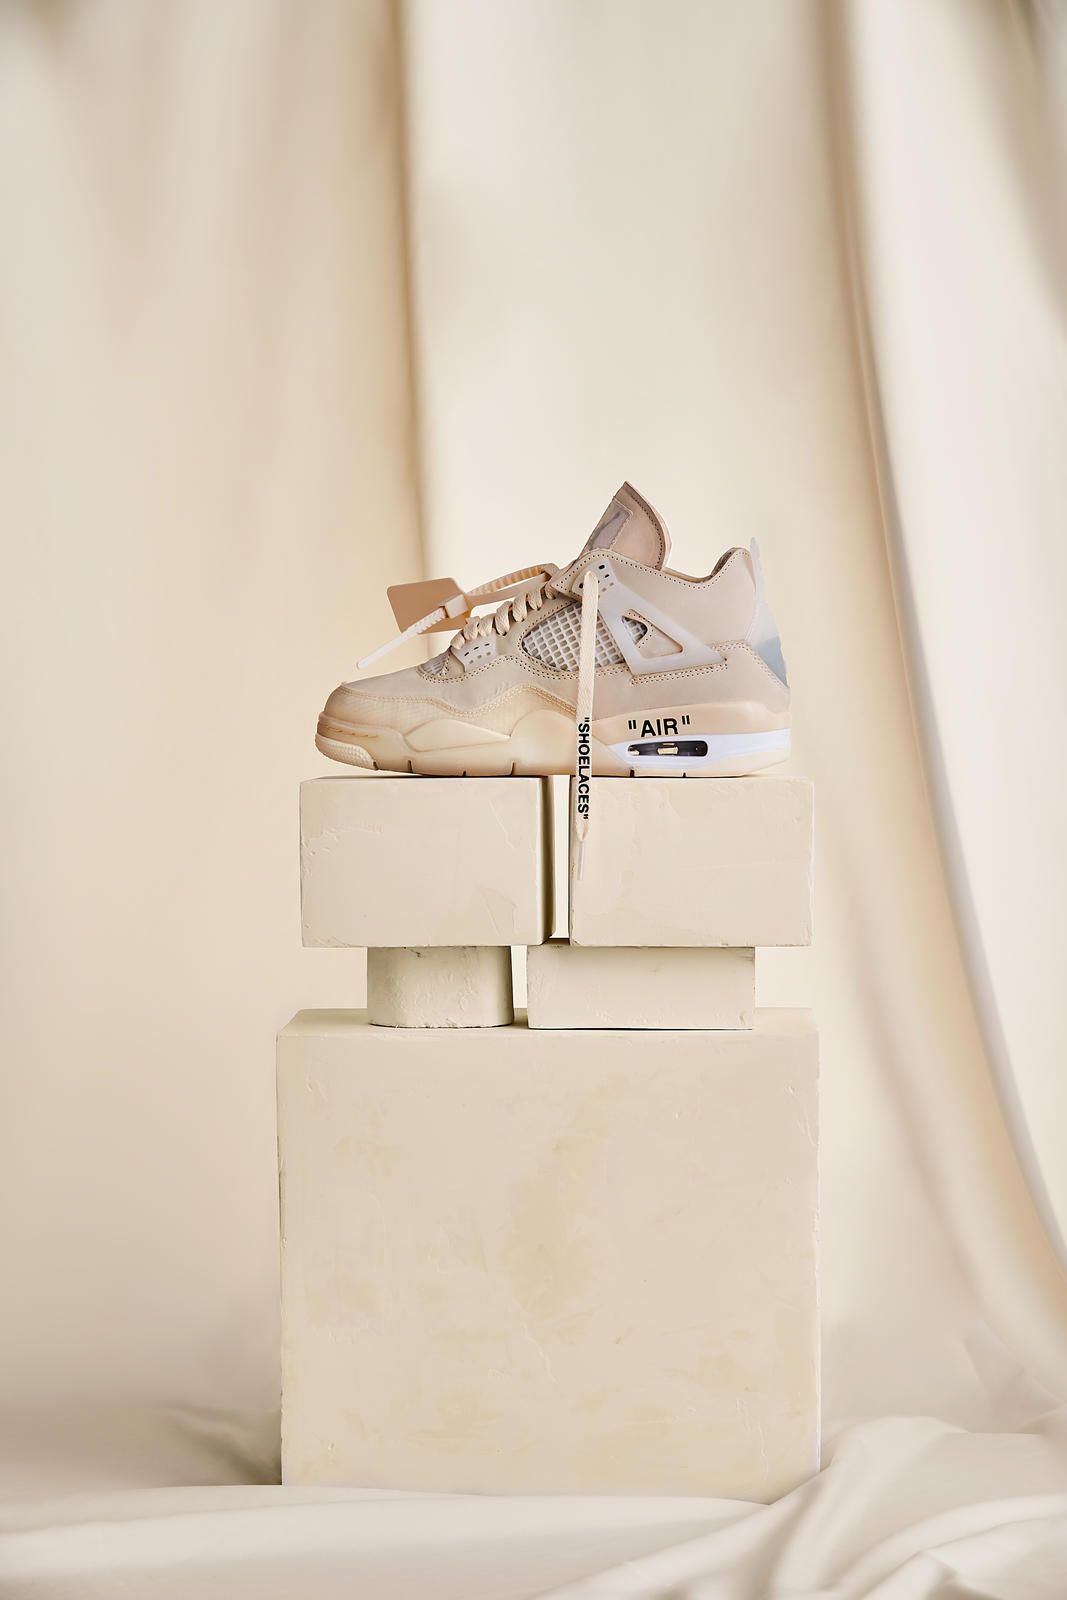 Air Jordan 4 (Off-White)  Sneakers wallpaper, Jordan shoes wallpaper,  Shoes wallpaper